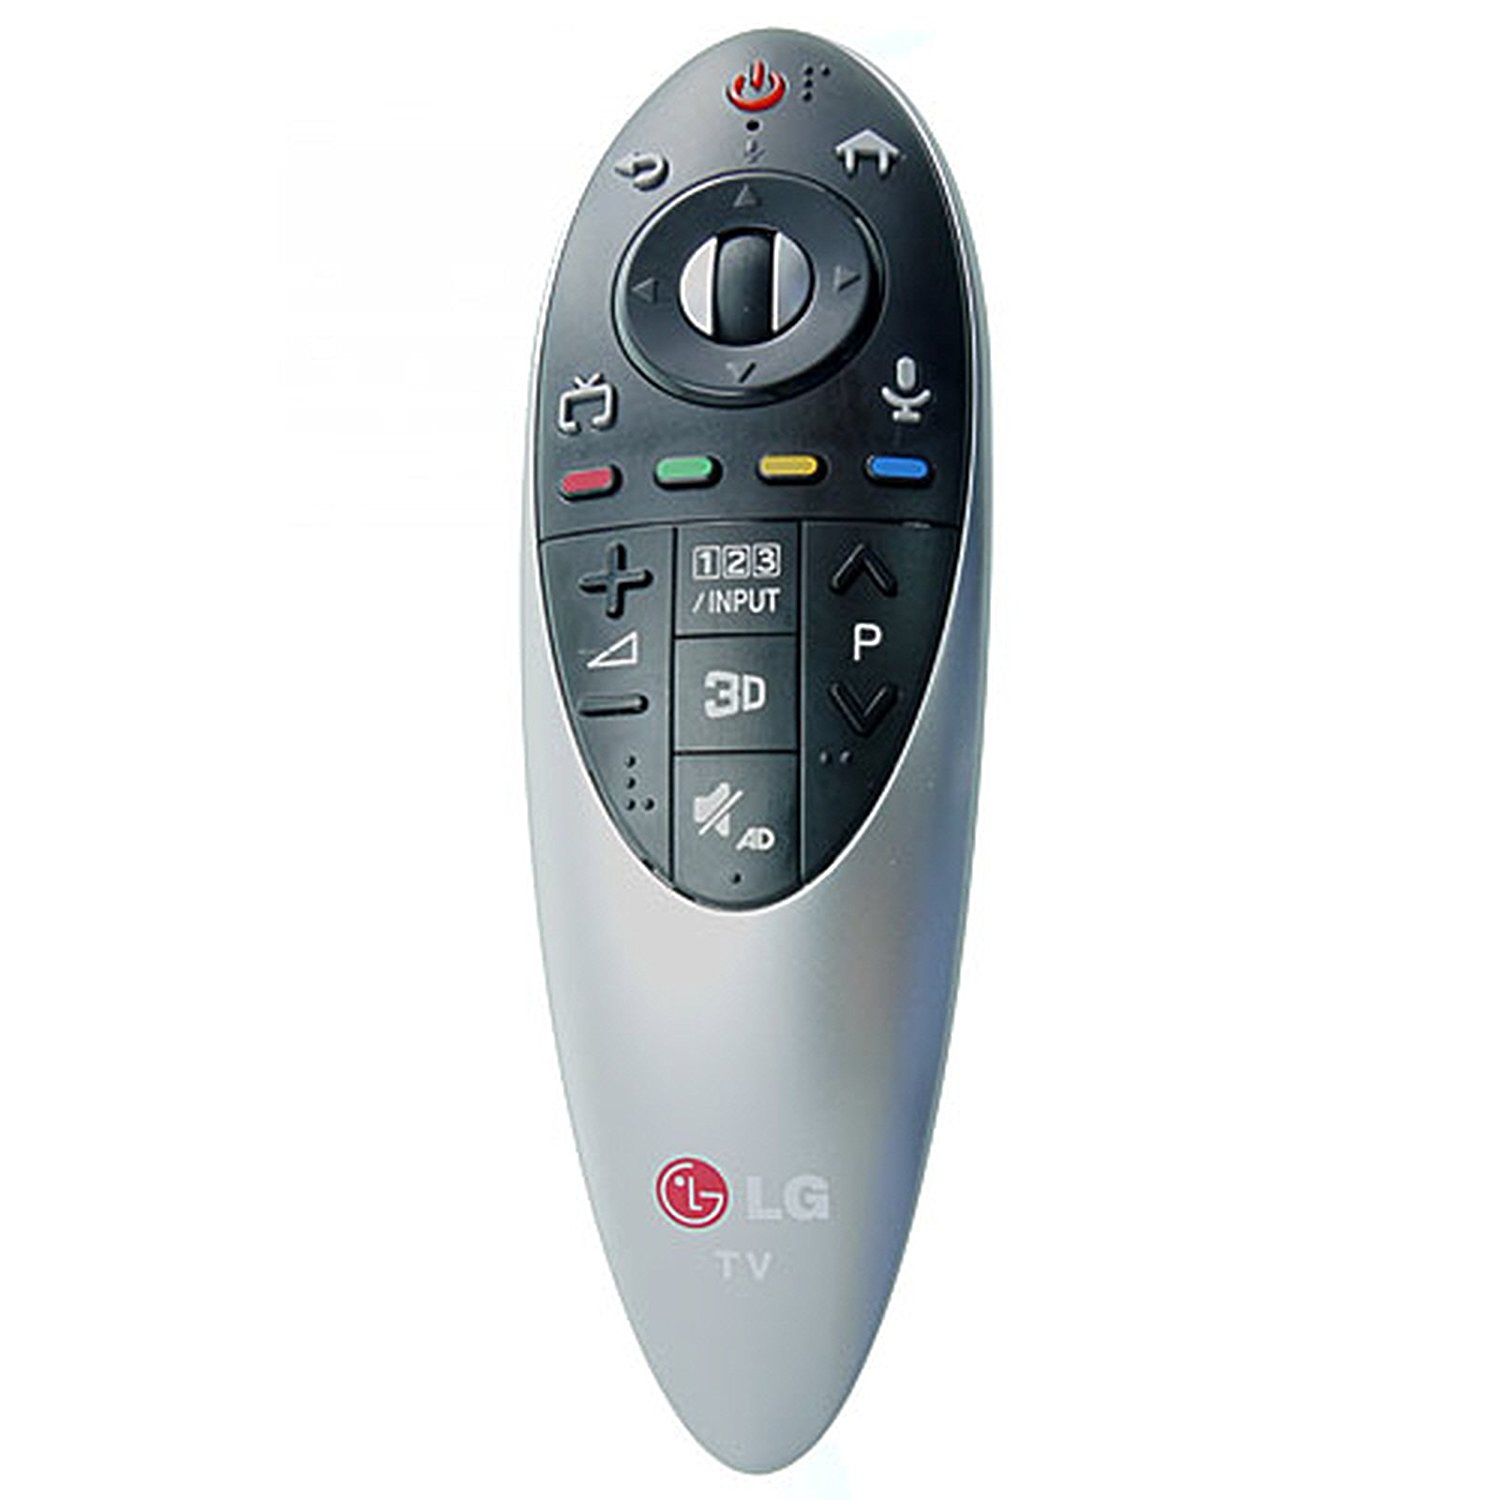 Купить пульт для телевизора. Пульт LG an-mr500. Пульт LG Magic Remote an-mr500g. LG Magic Motion an-mr500g. Пульт для телевизора LG Magic Remote an-mr500.